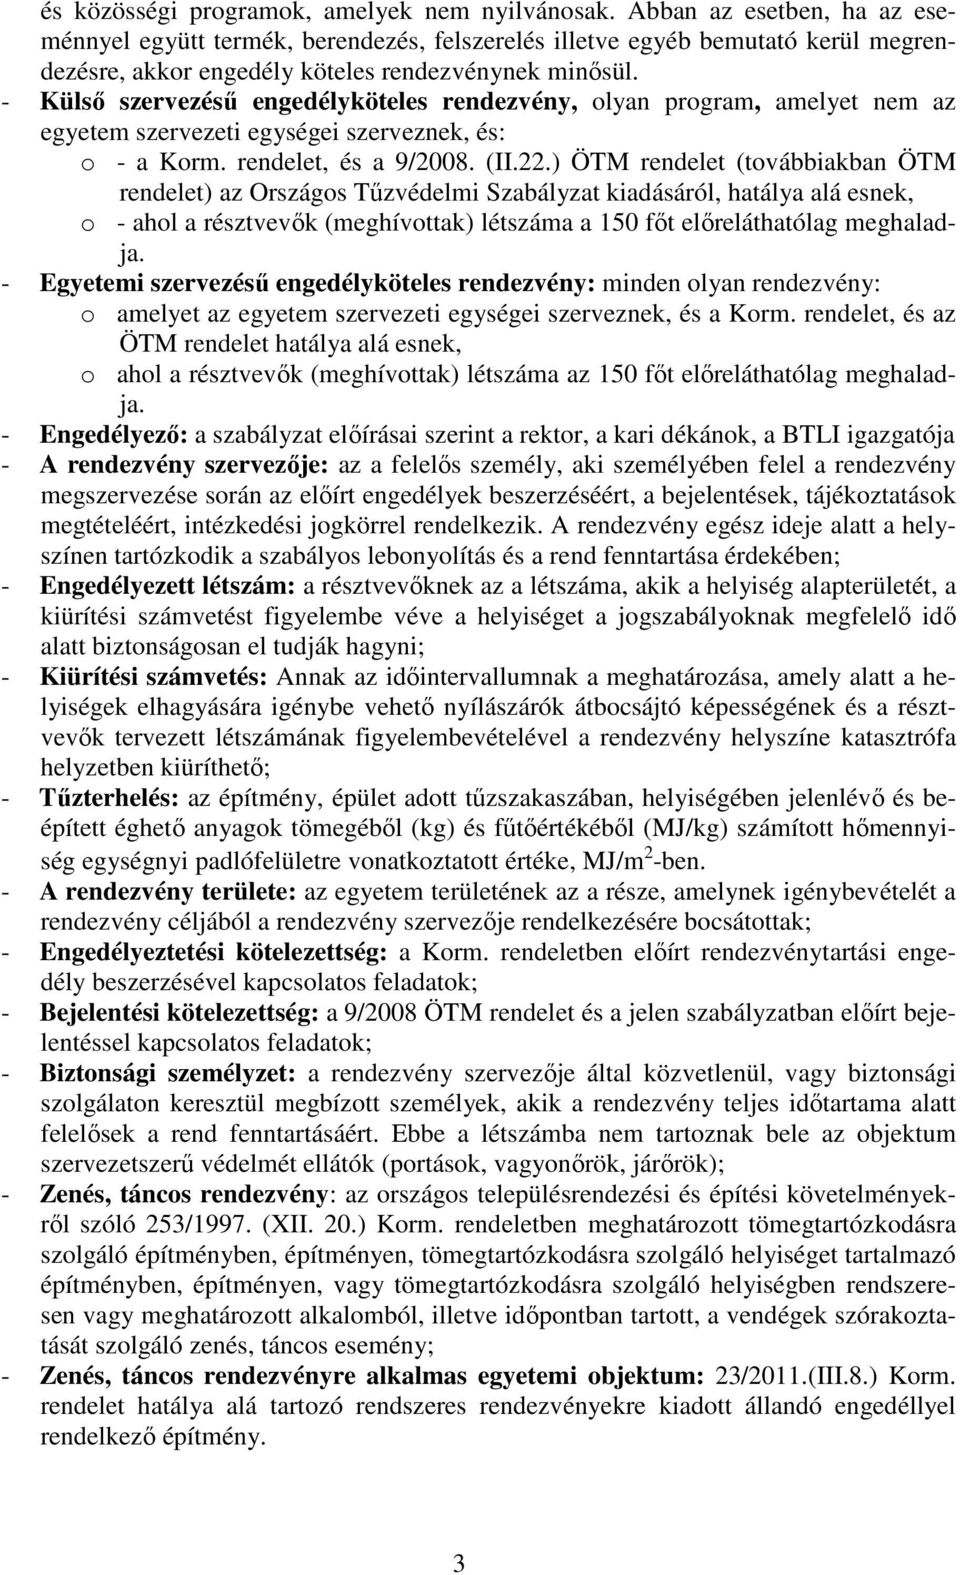 - Külsı szervezéső engedélyköteles rendezvény, olyan program, amelyet nem az egyetem szervezeti egységei szerveznek, és: o - a Korm. rendelet, és a 9/2008. (II.22.